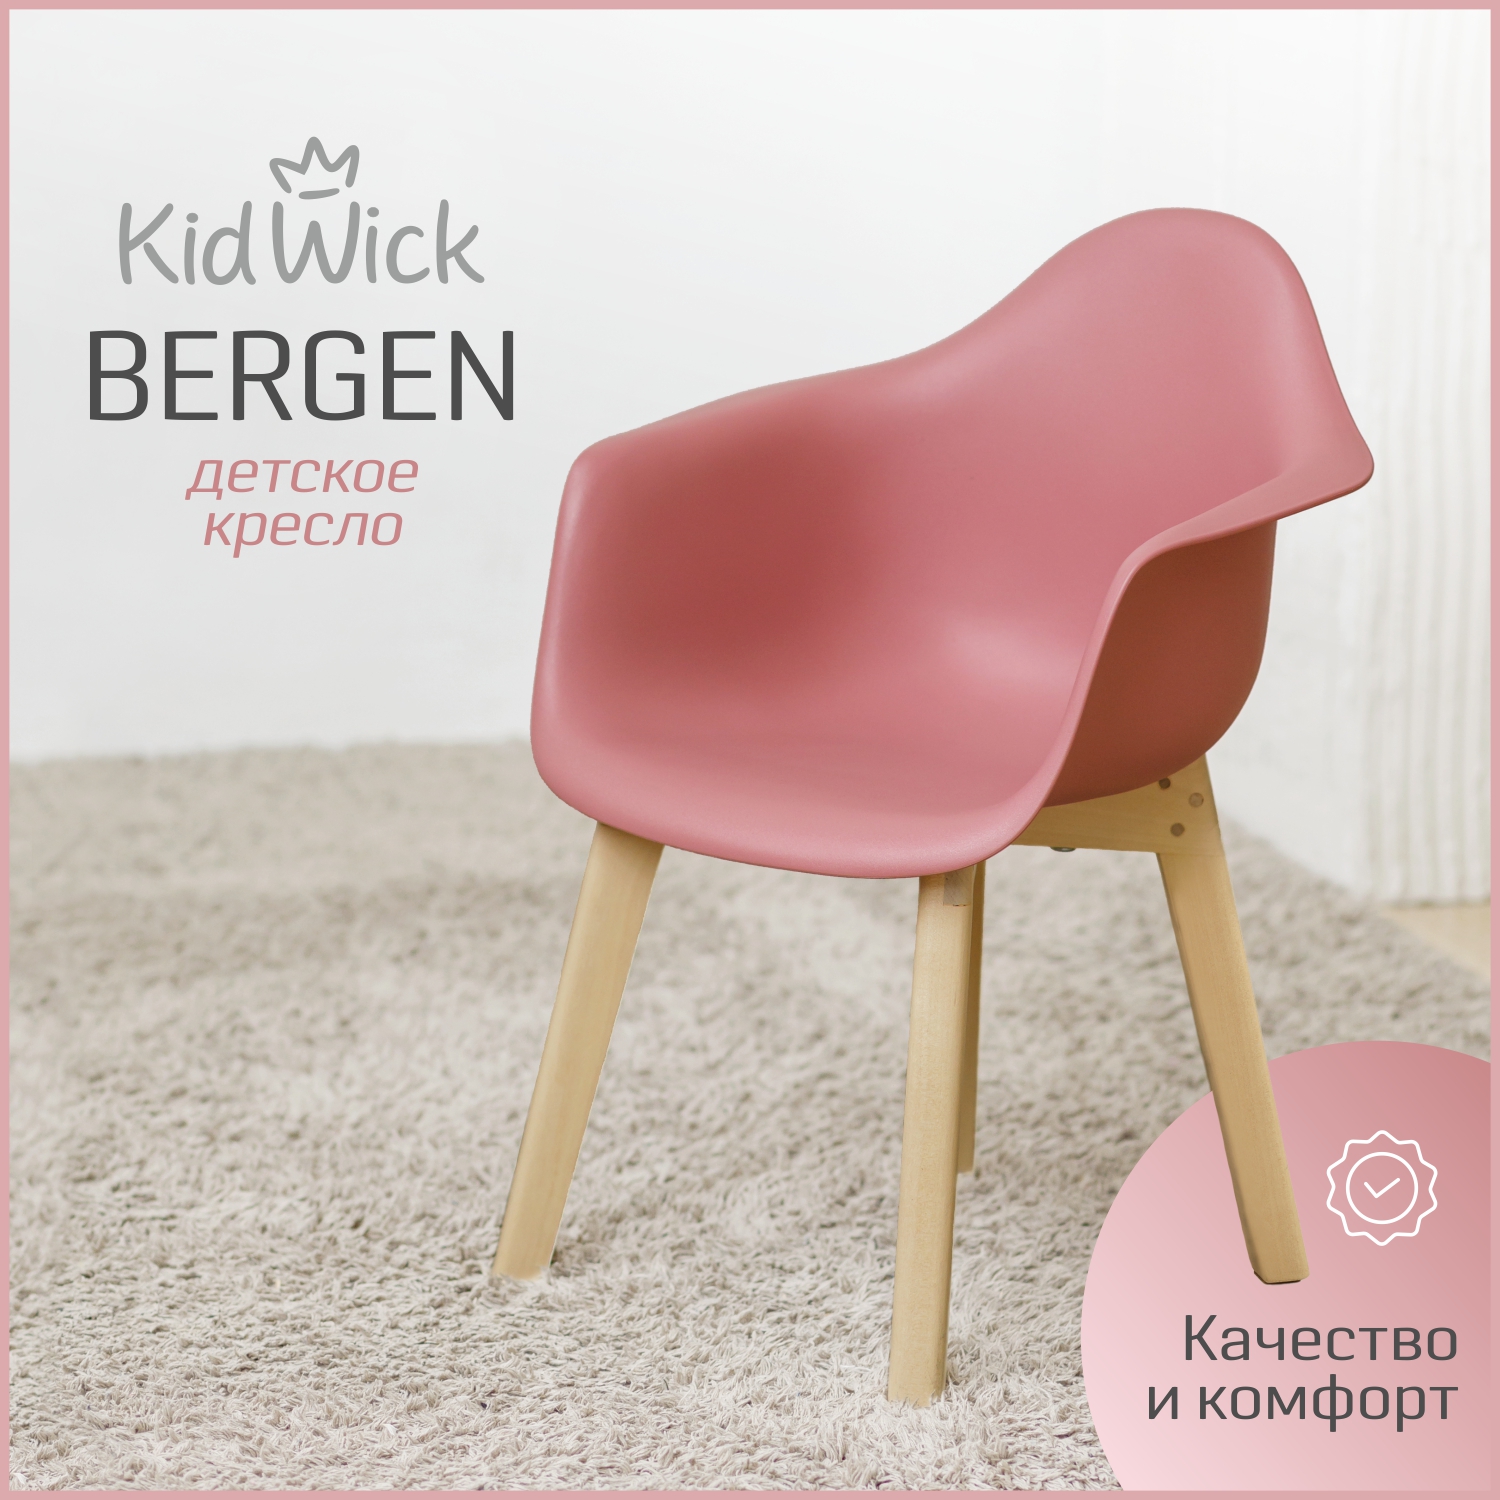 Кресло детское Kidwick Bergen, розовый